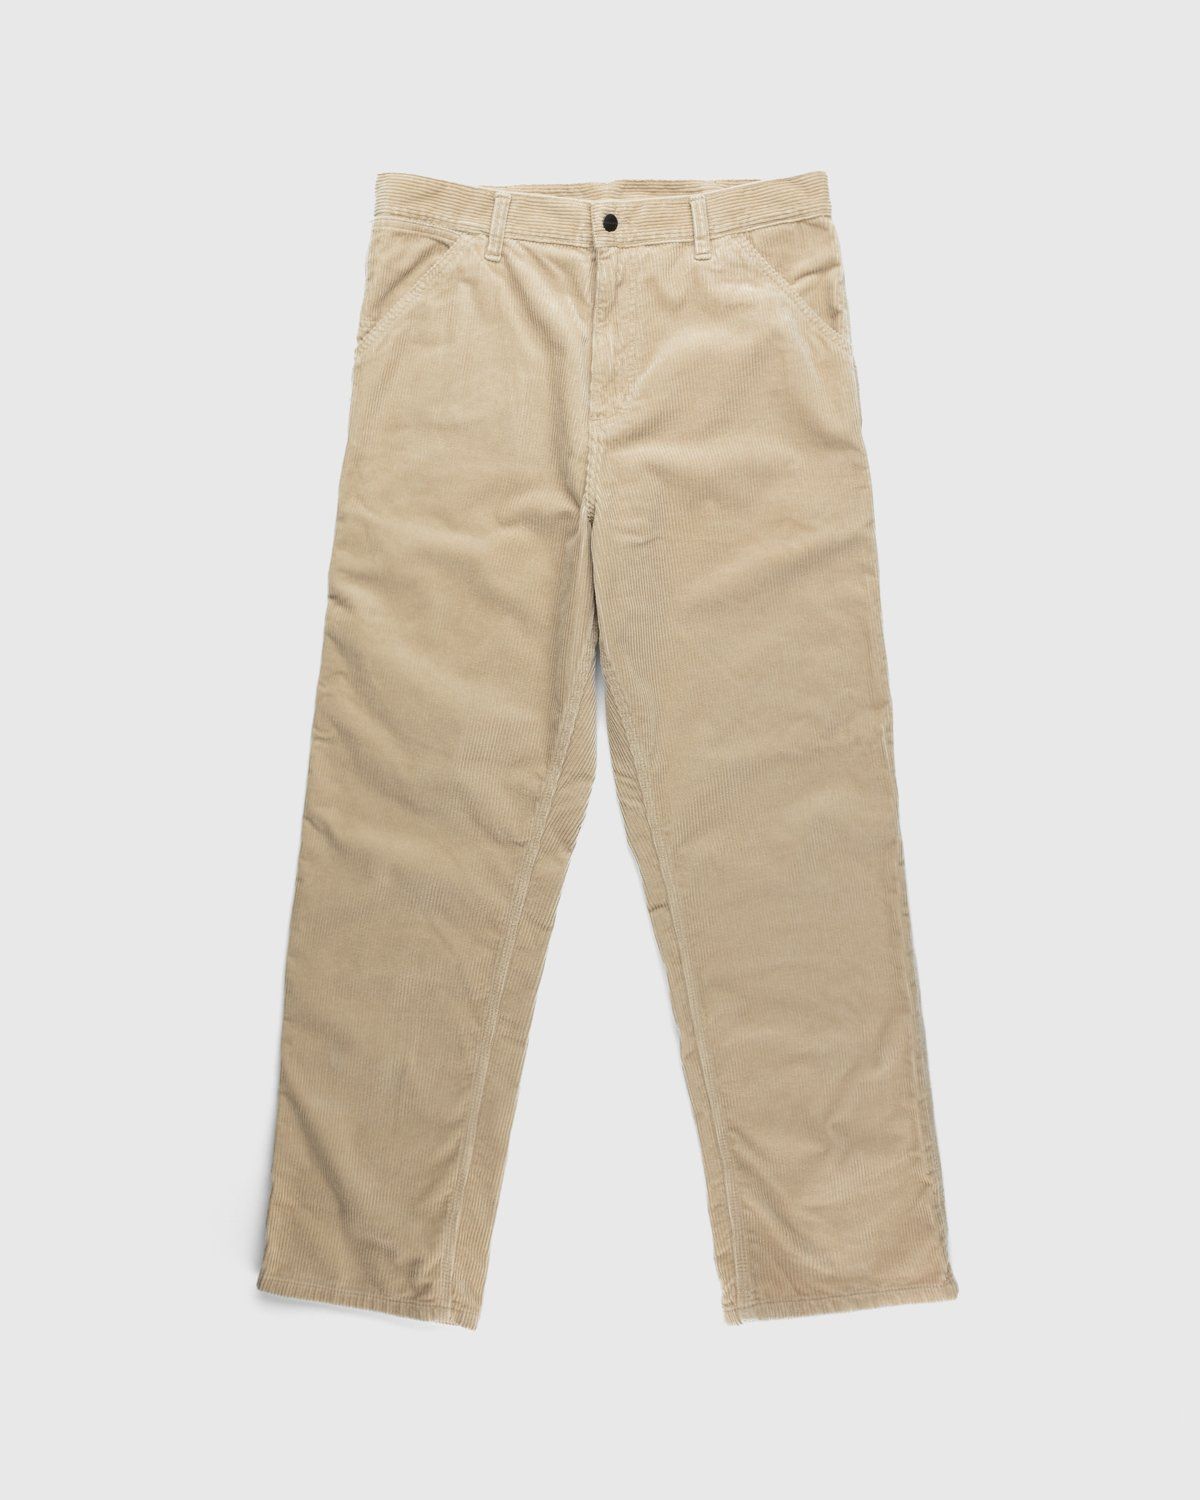 Carhartt WIP – Ruck Single Knee Pant Beige - Pants - Brown - Image 1